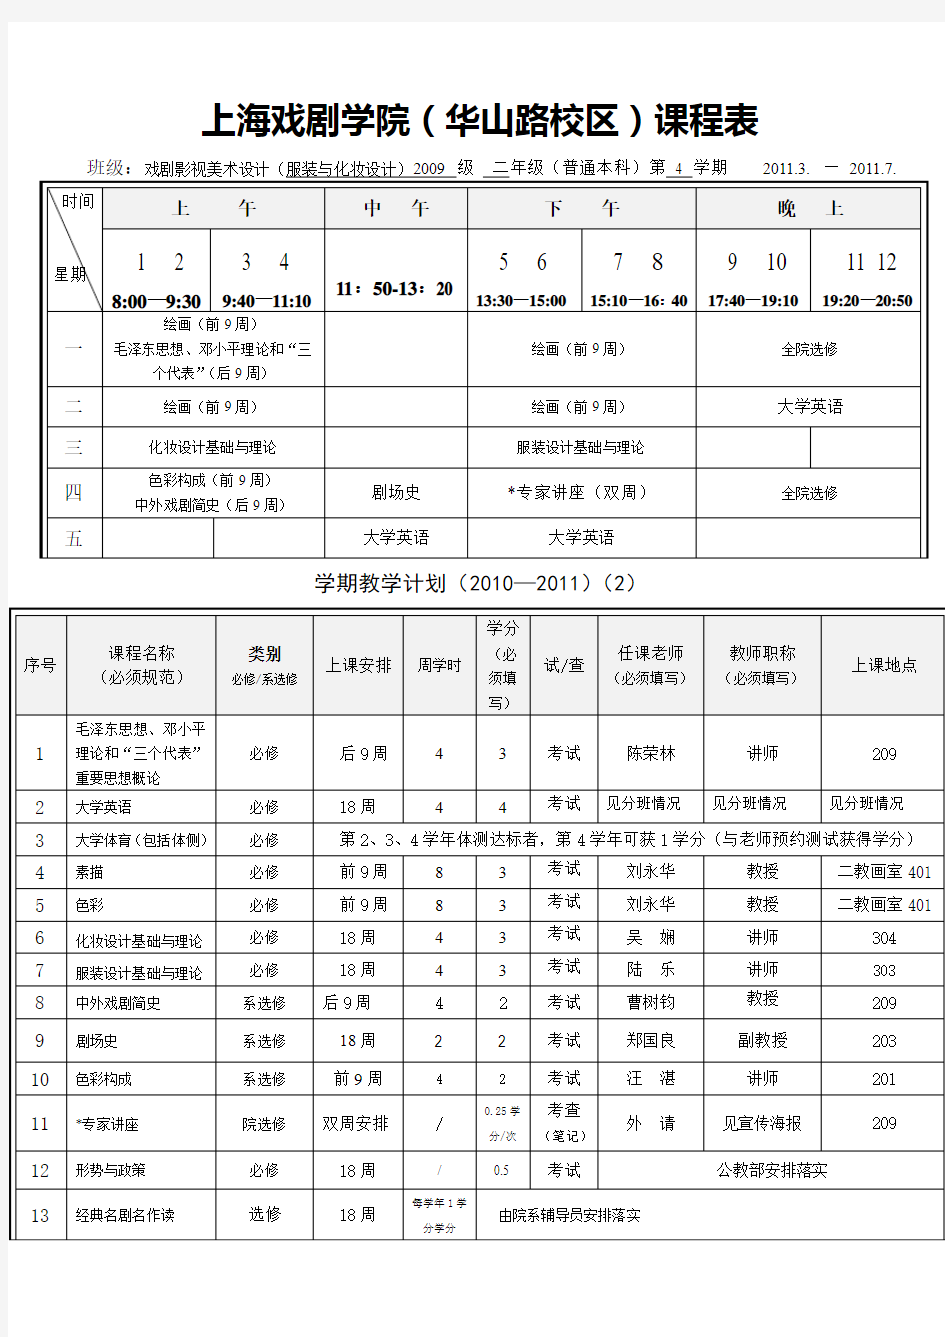 上海戏剧学院华山路校区课程表